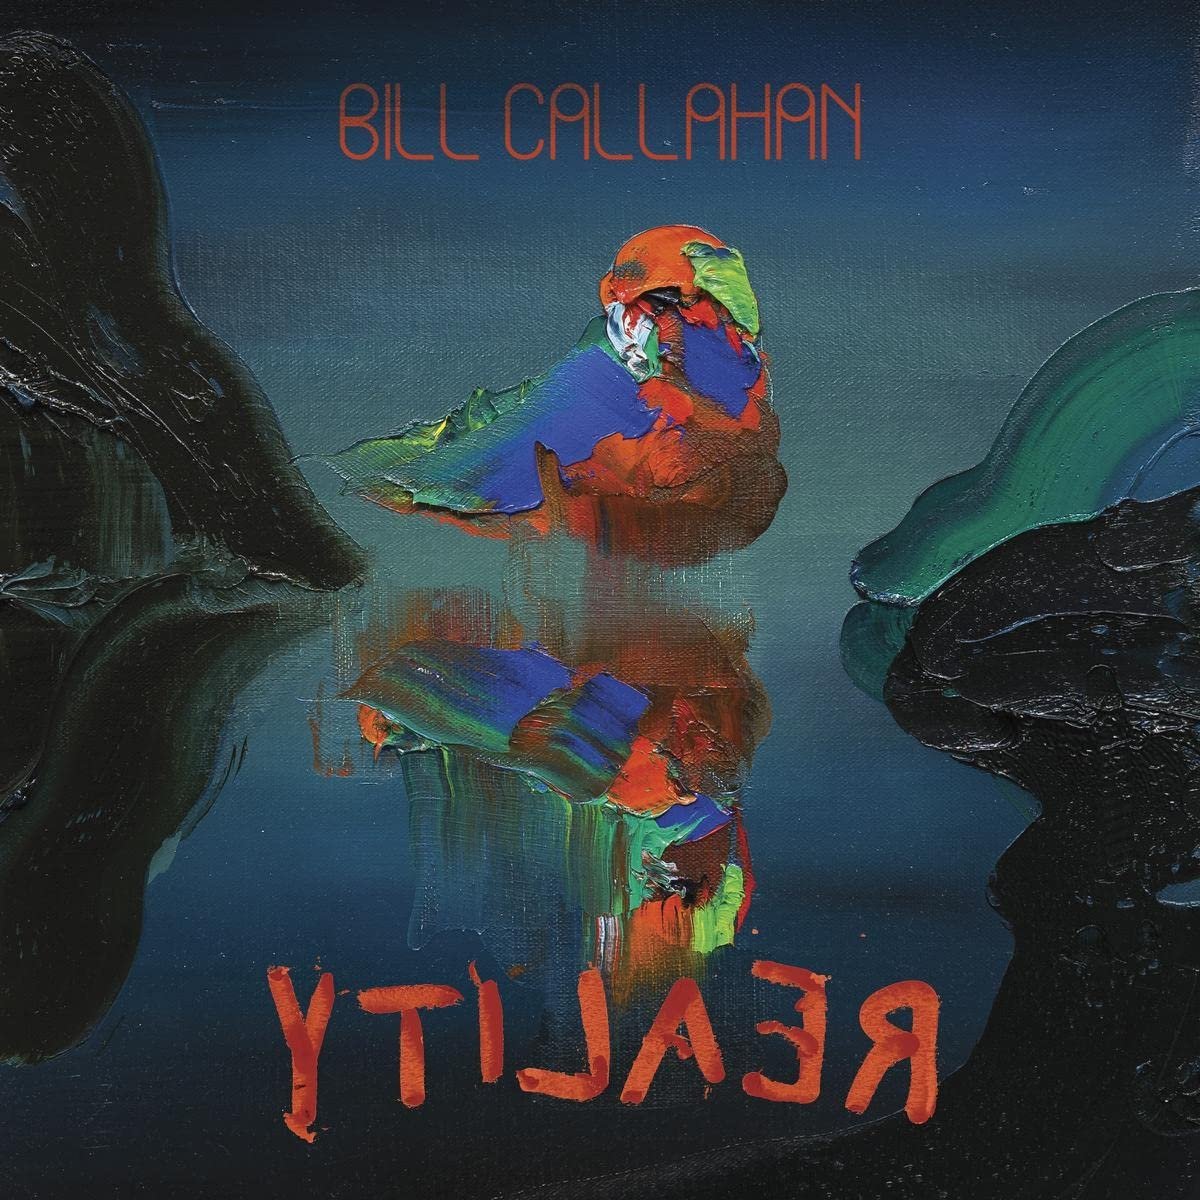 Callahan, Bill "ytilaeR"